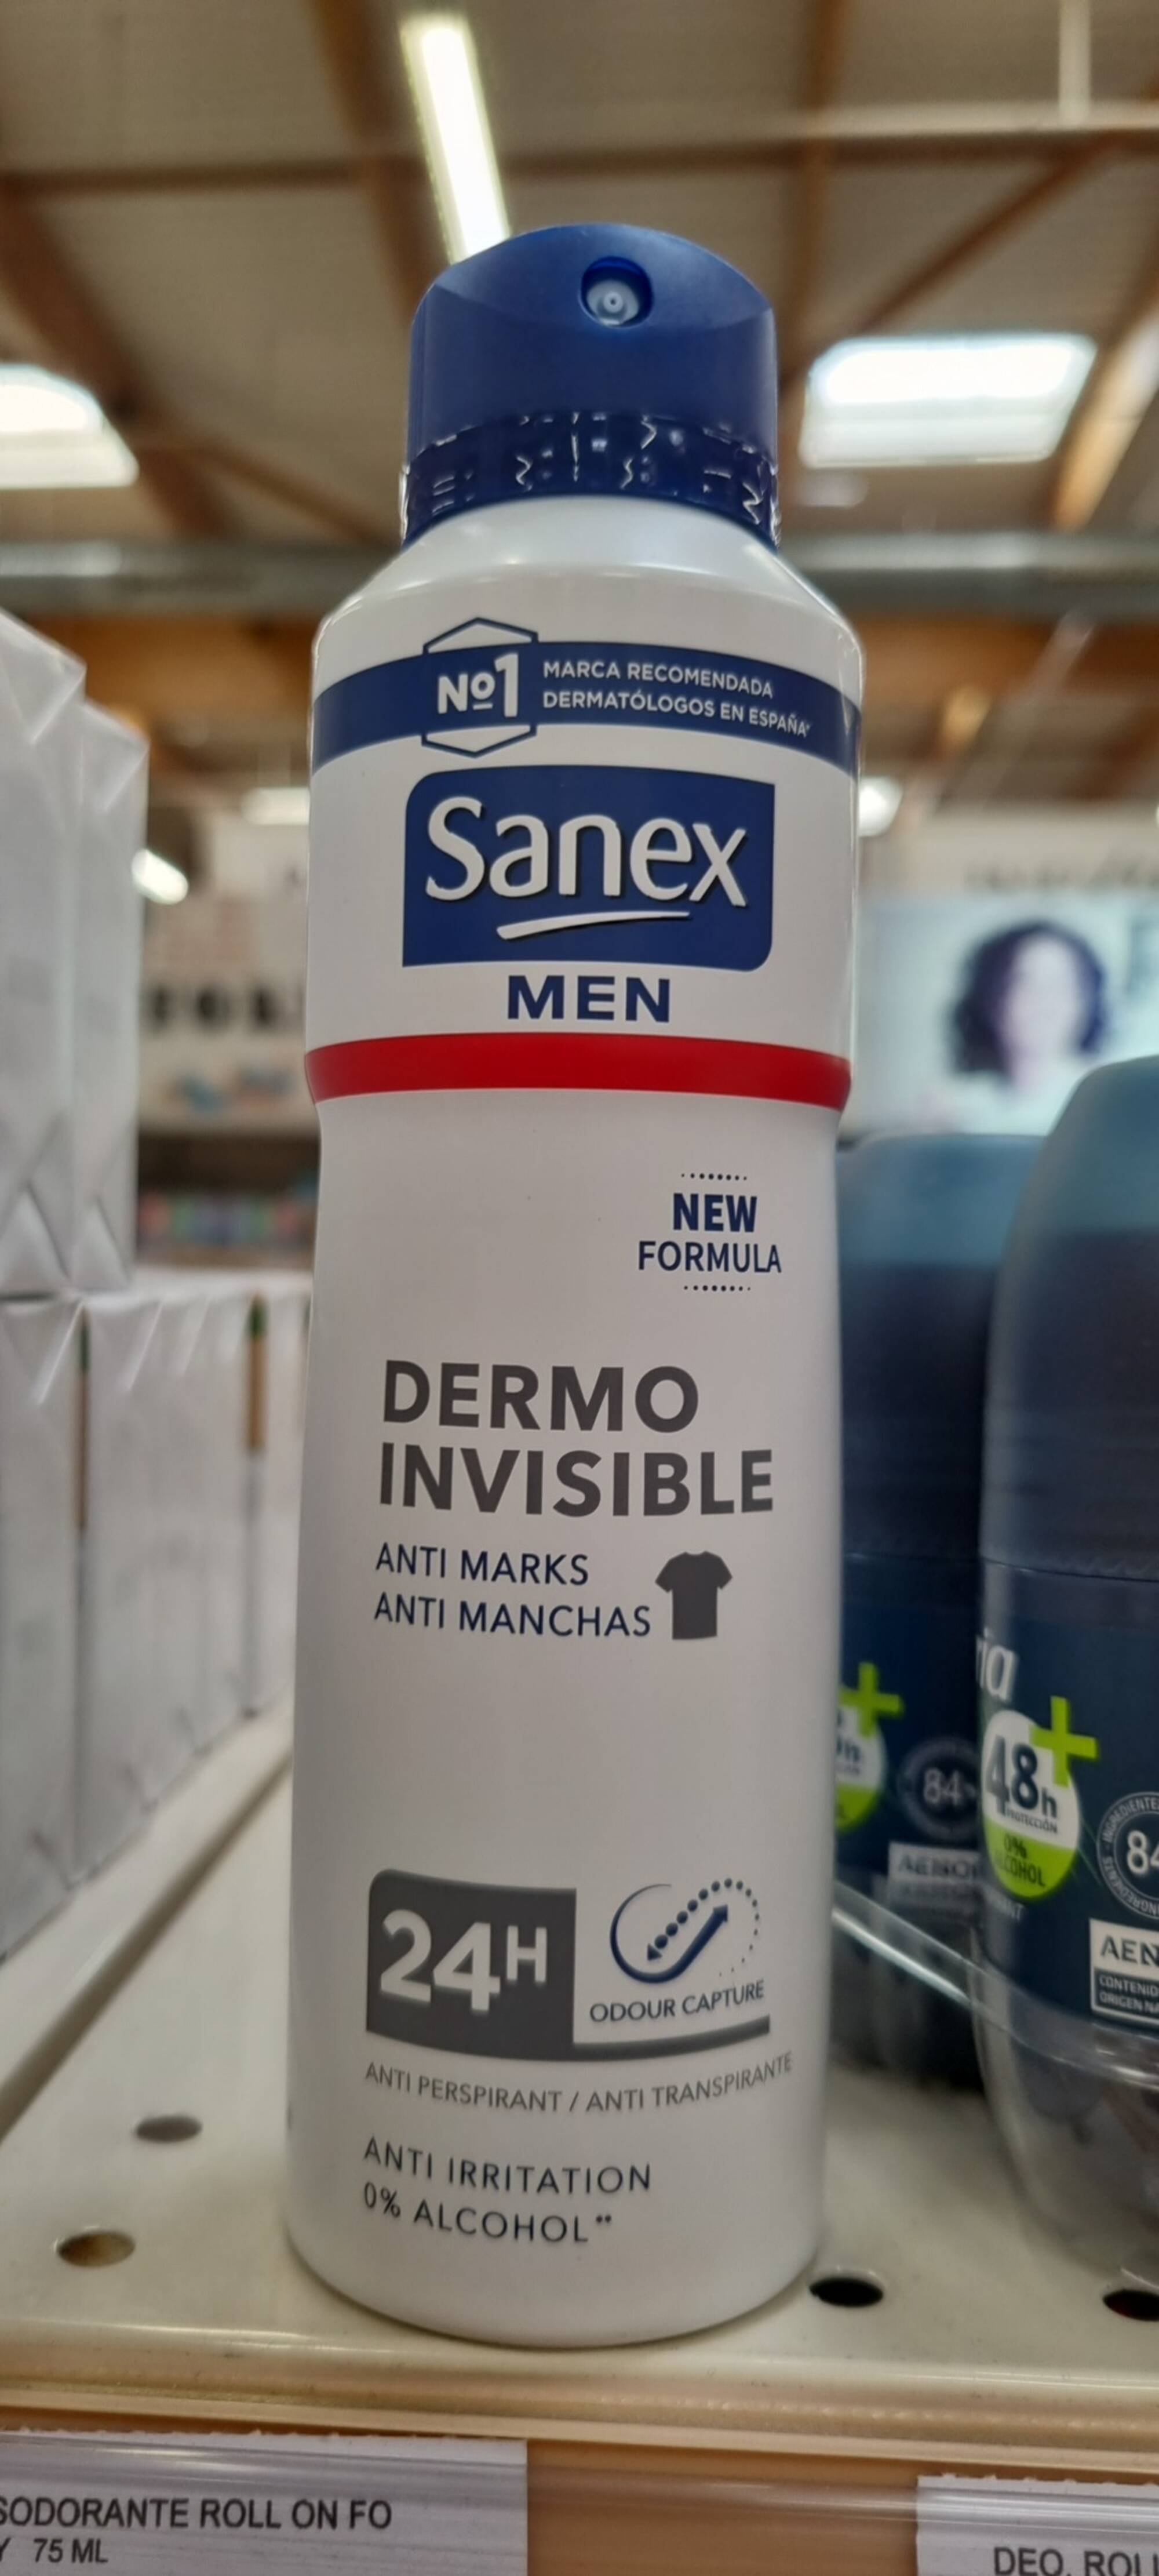 SANEX - Men dermo invisible - Anti-transpirant 24h